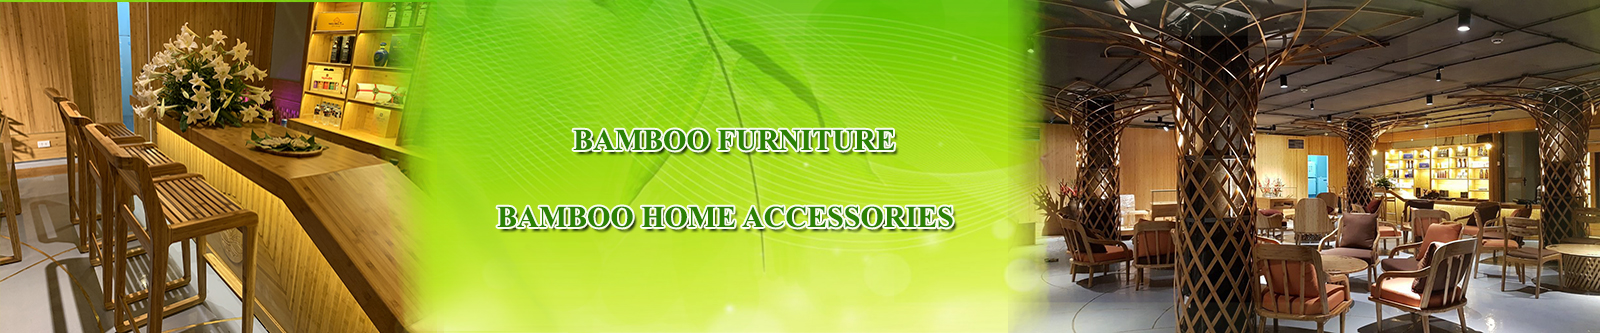 Bamboo Furniture & Accessories